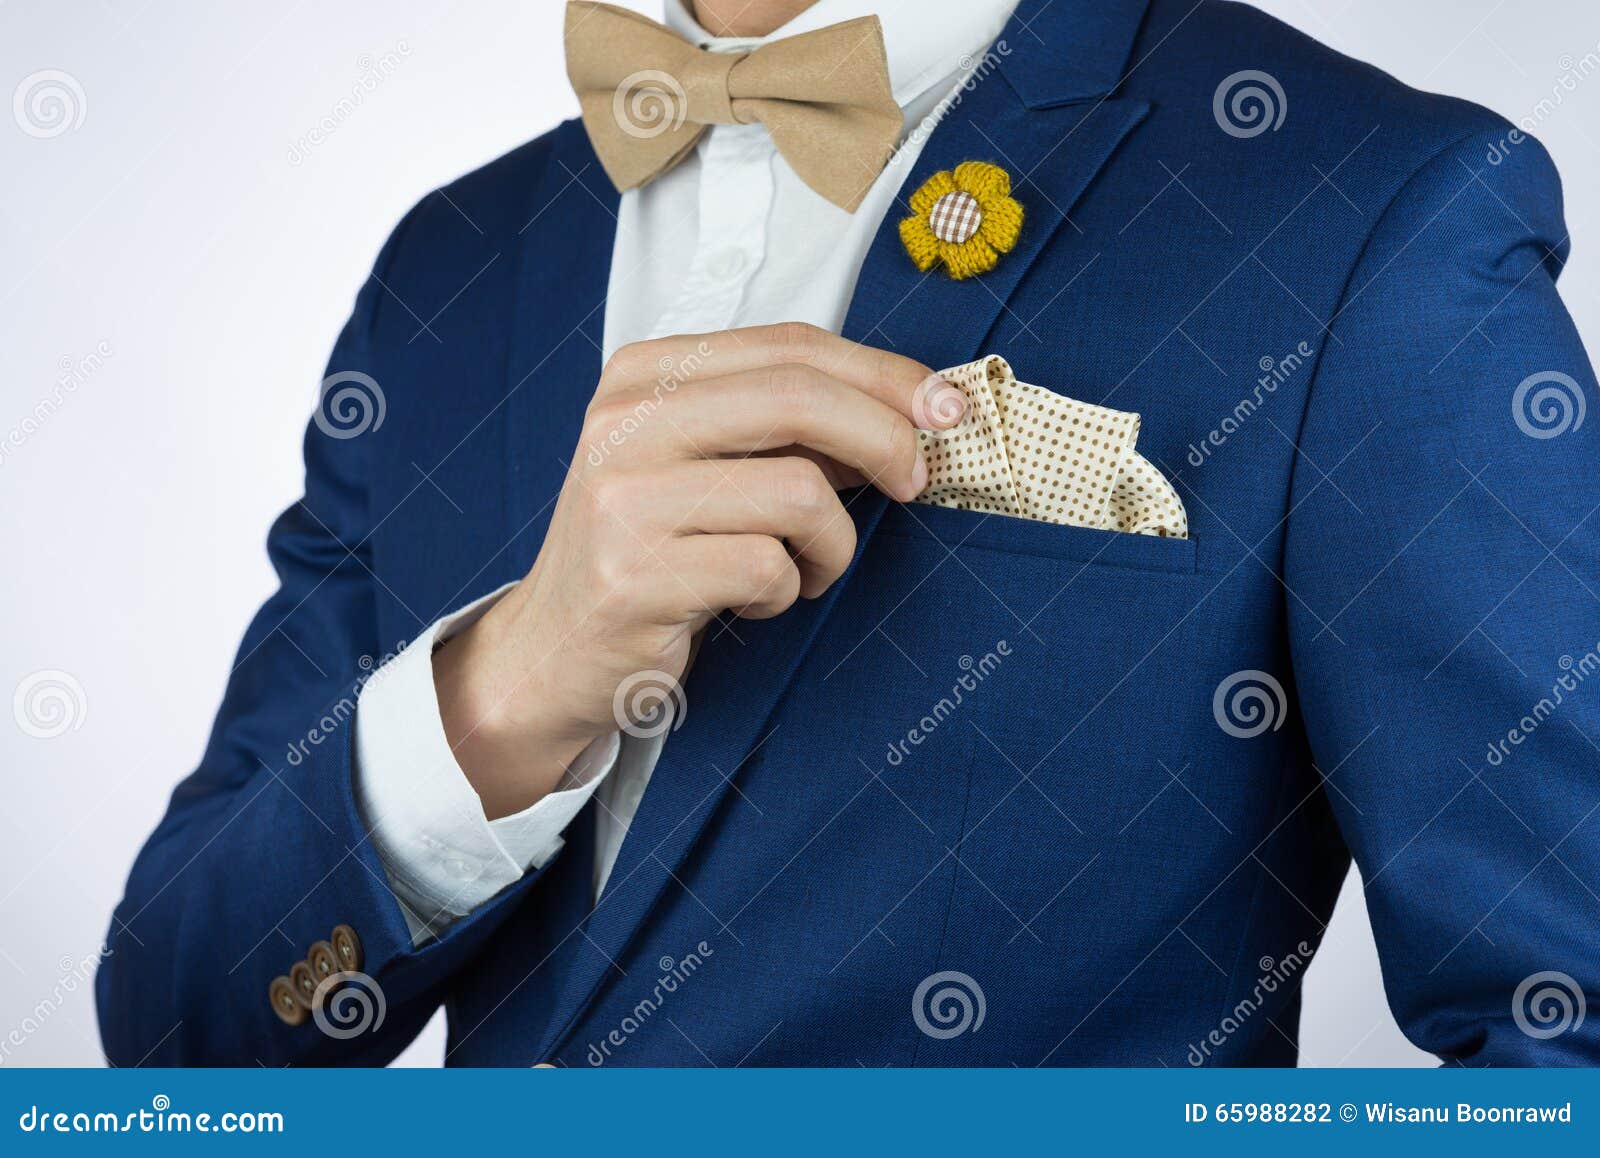 man blue suit bowtie, brooch, pocket square